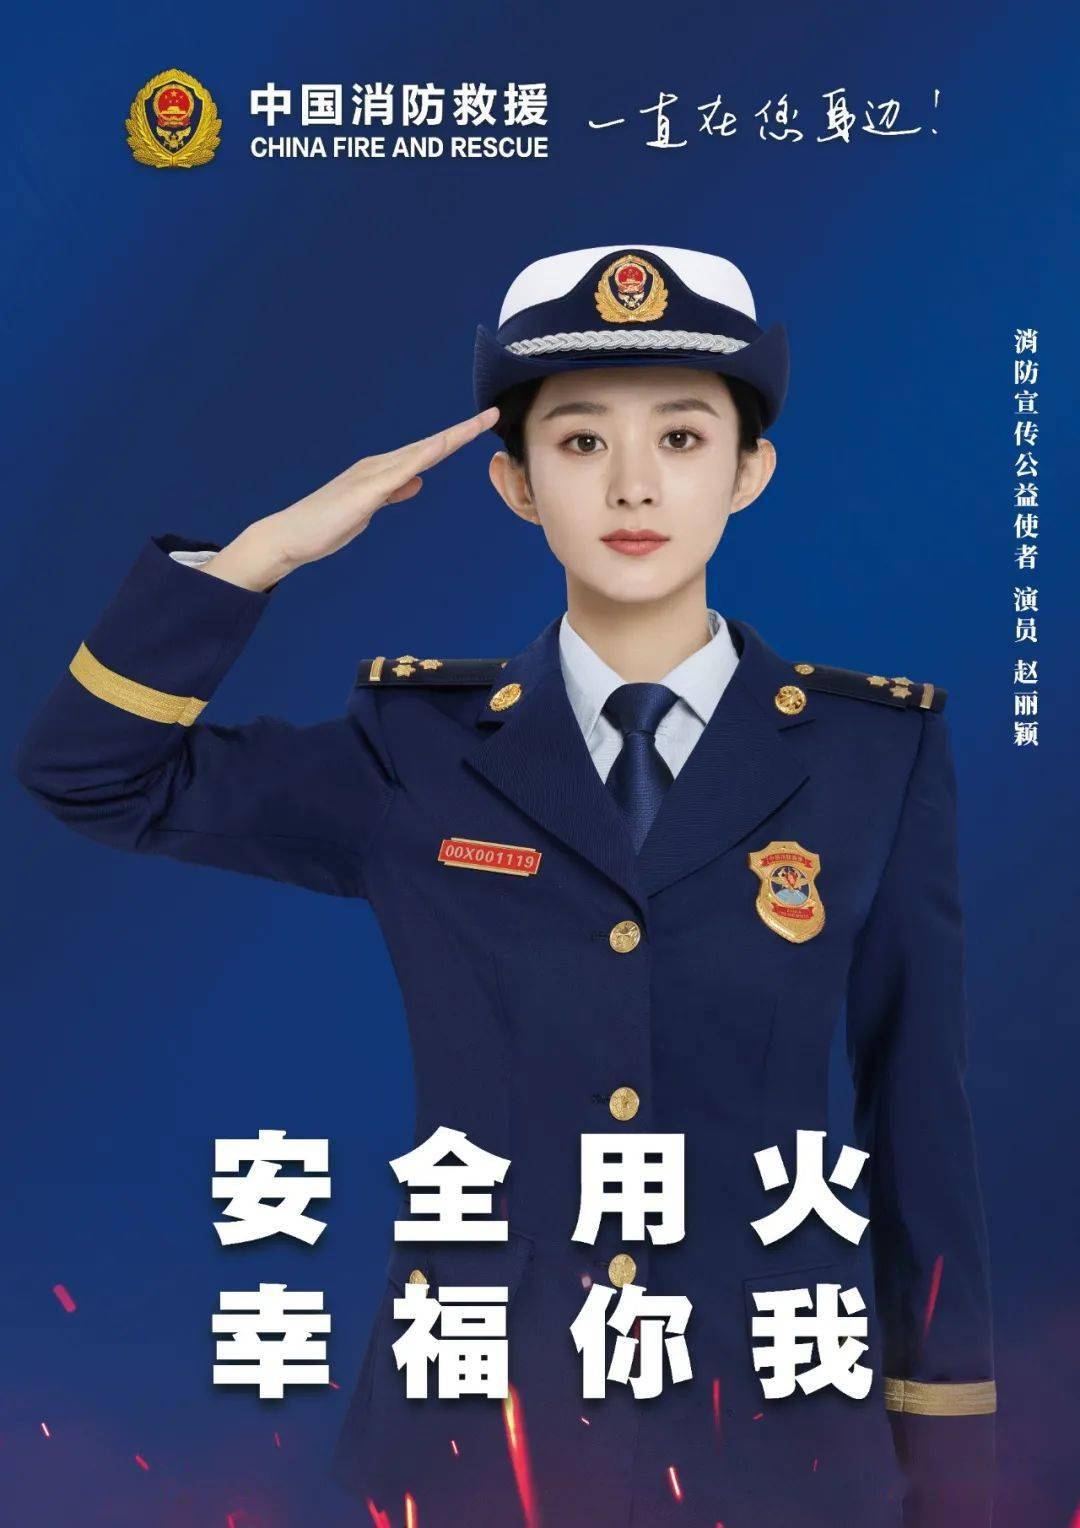 中国消防公益宣传使者:赵丽颖,吴京提示大家注意消防安全